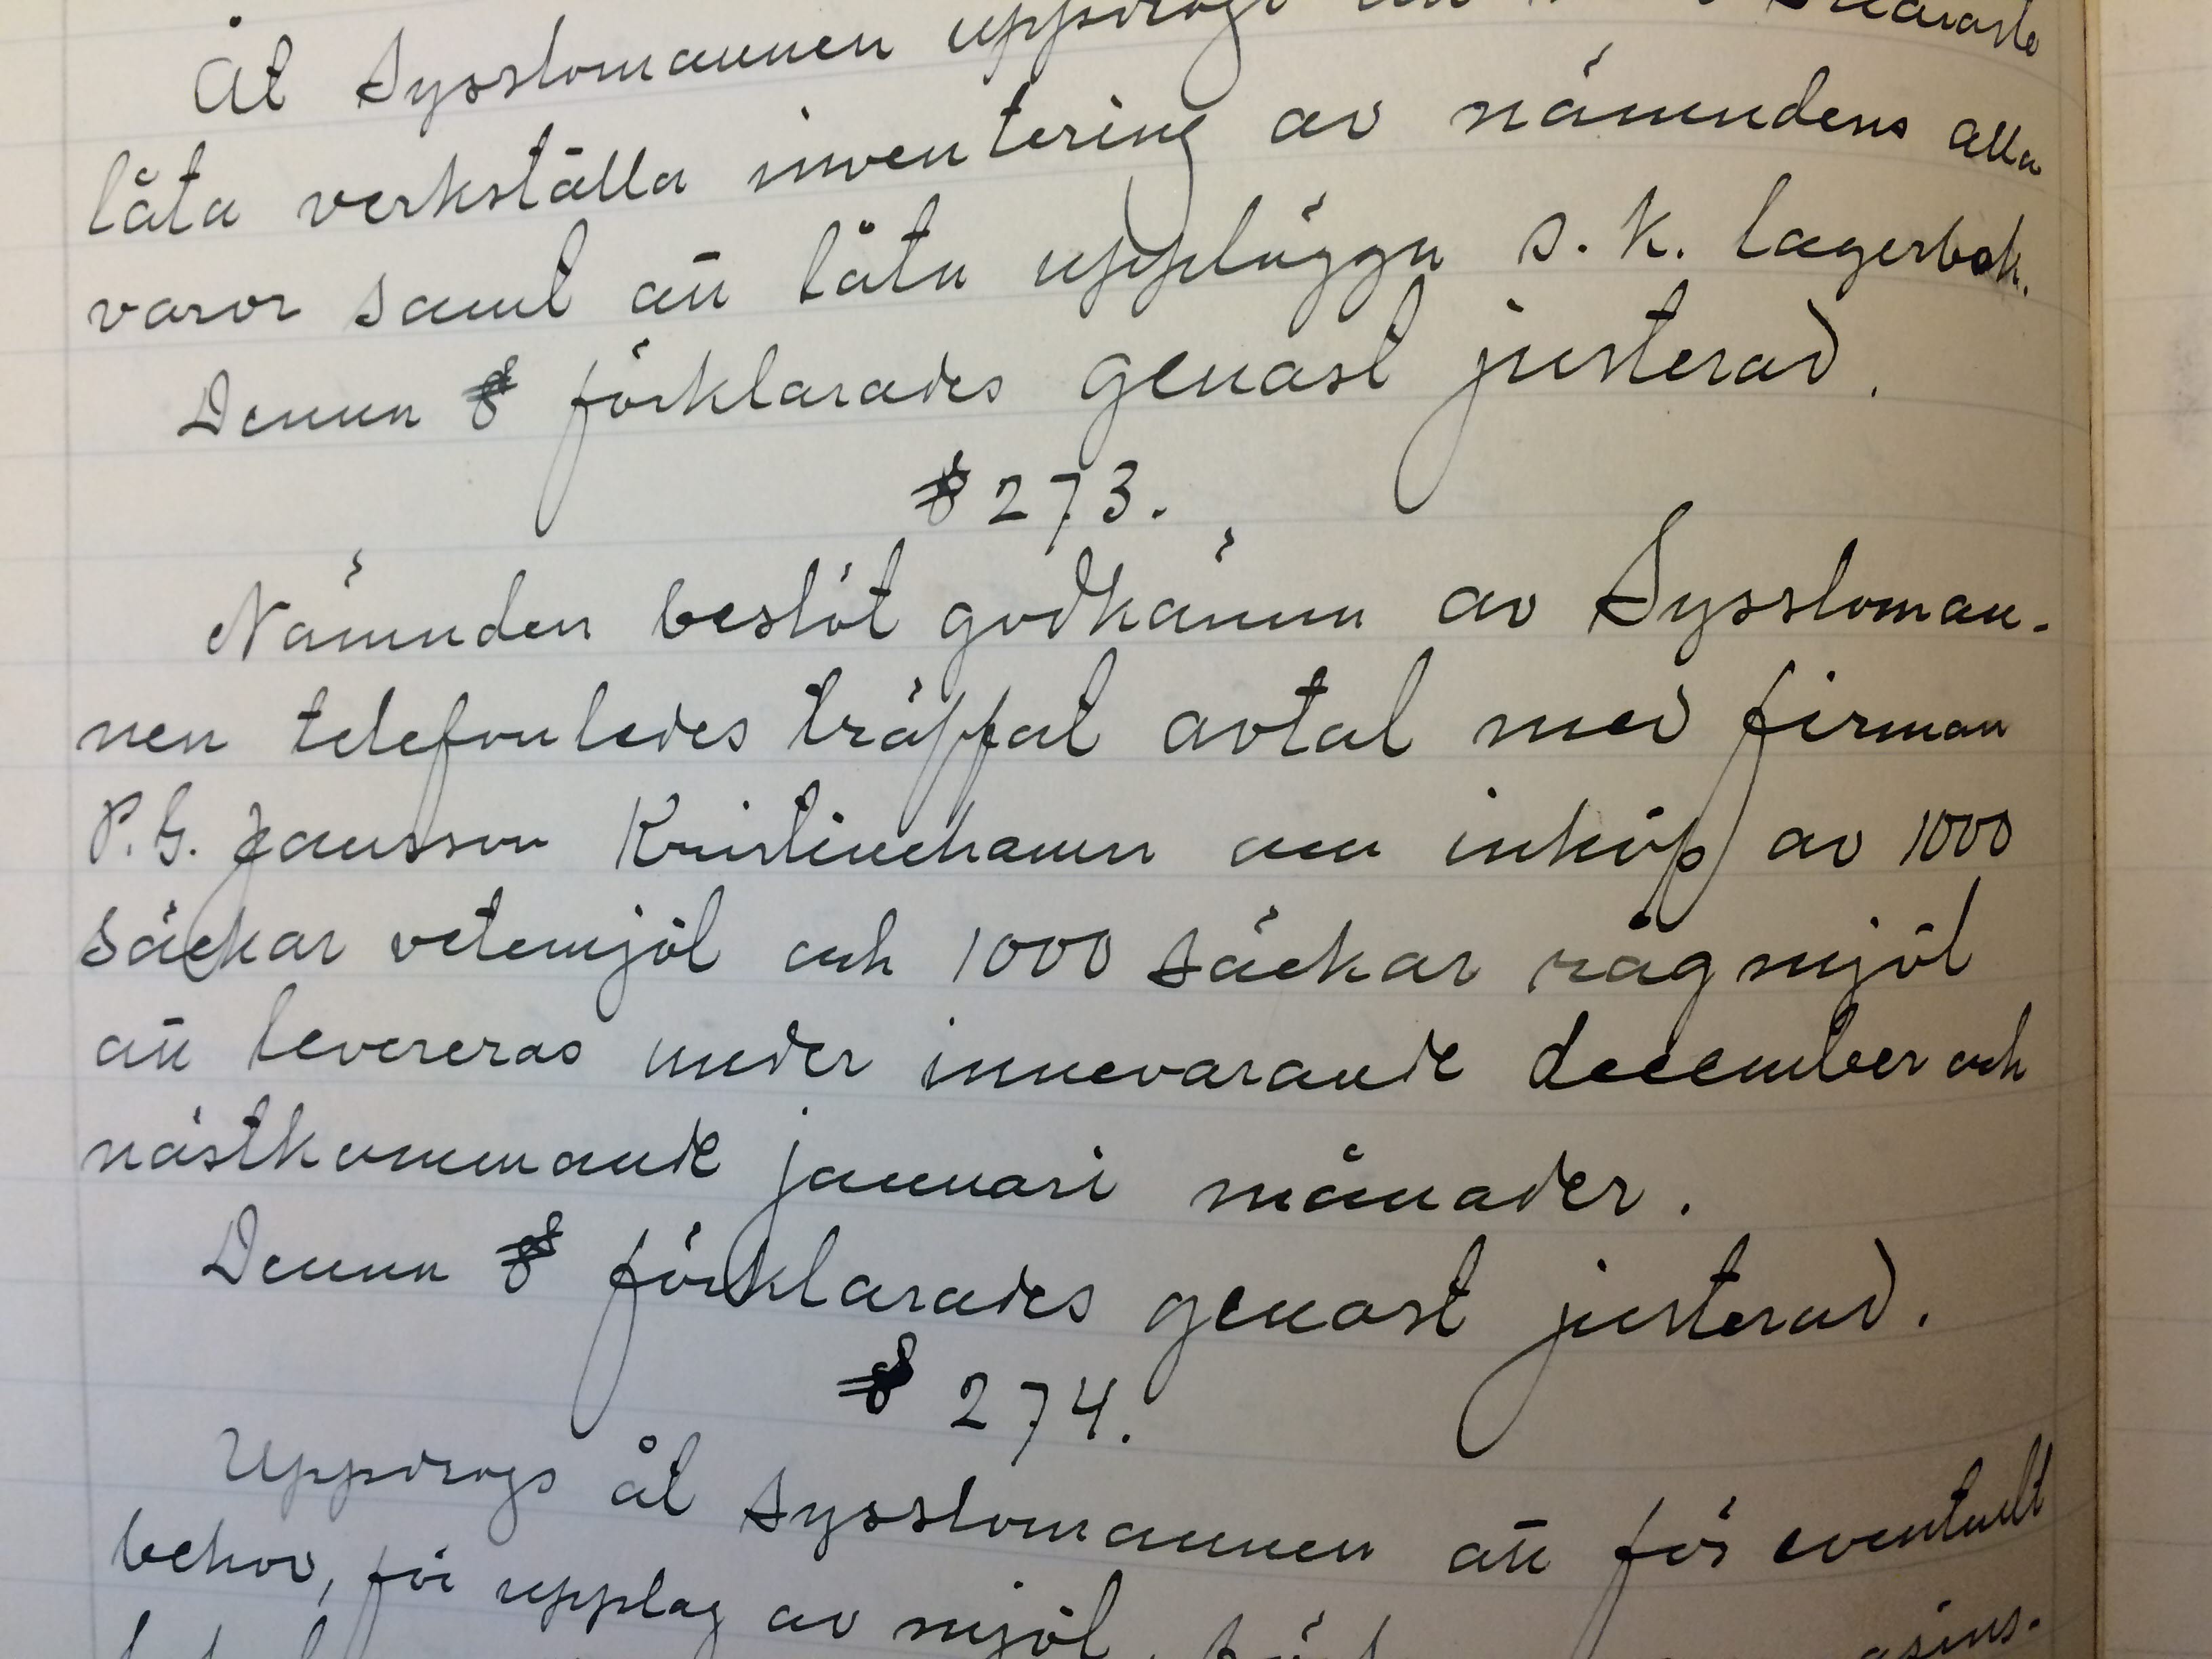 Livsmedelsnämnden protokoll december 1916.